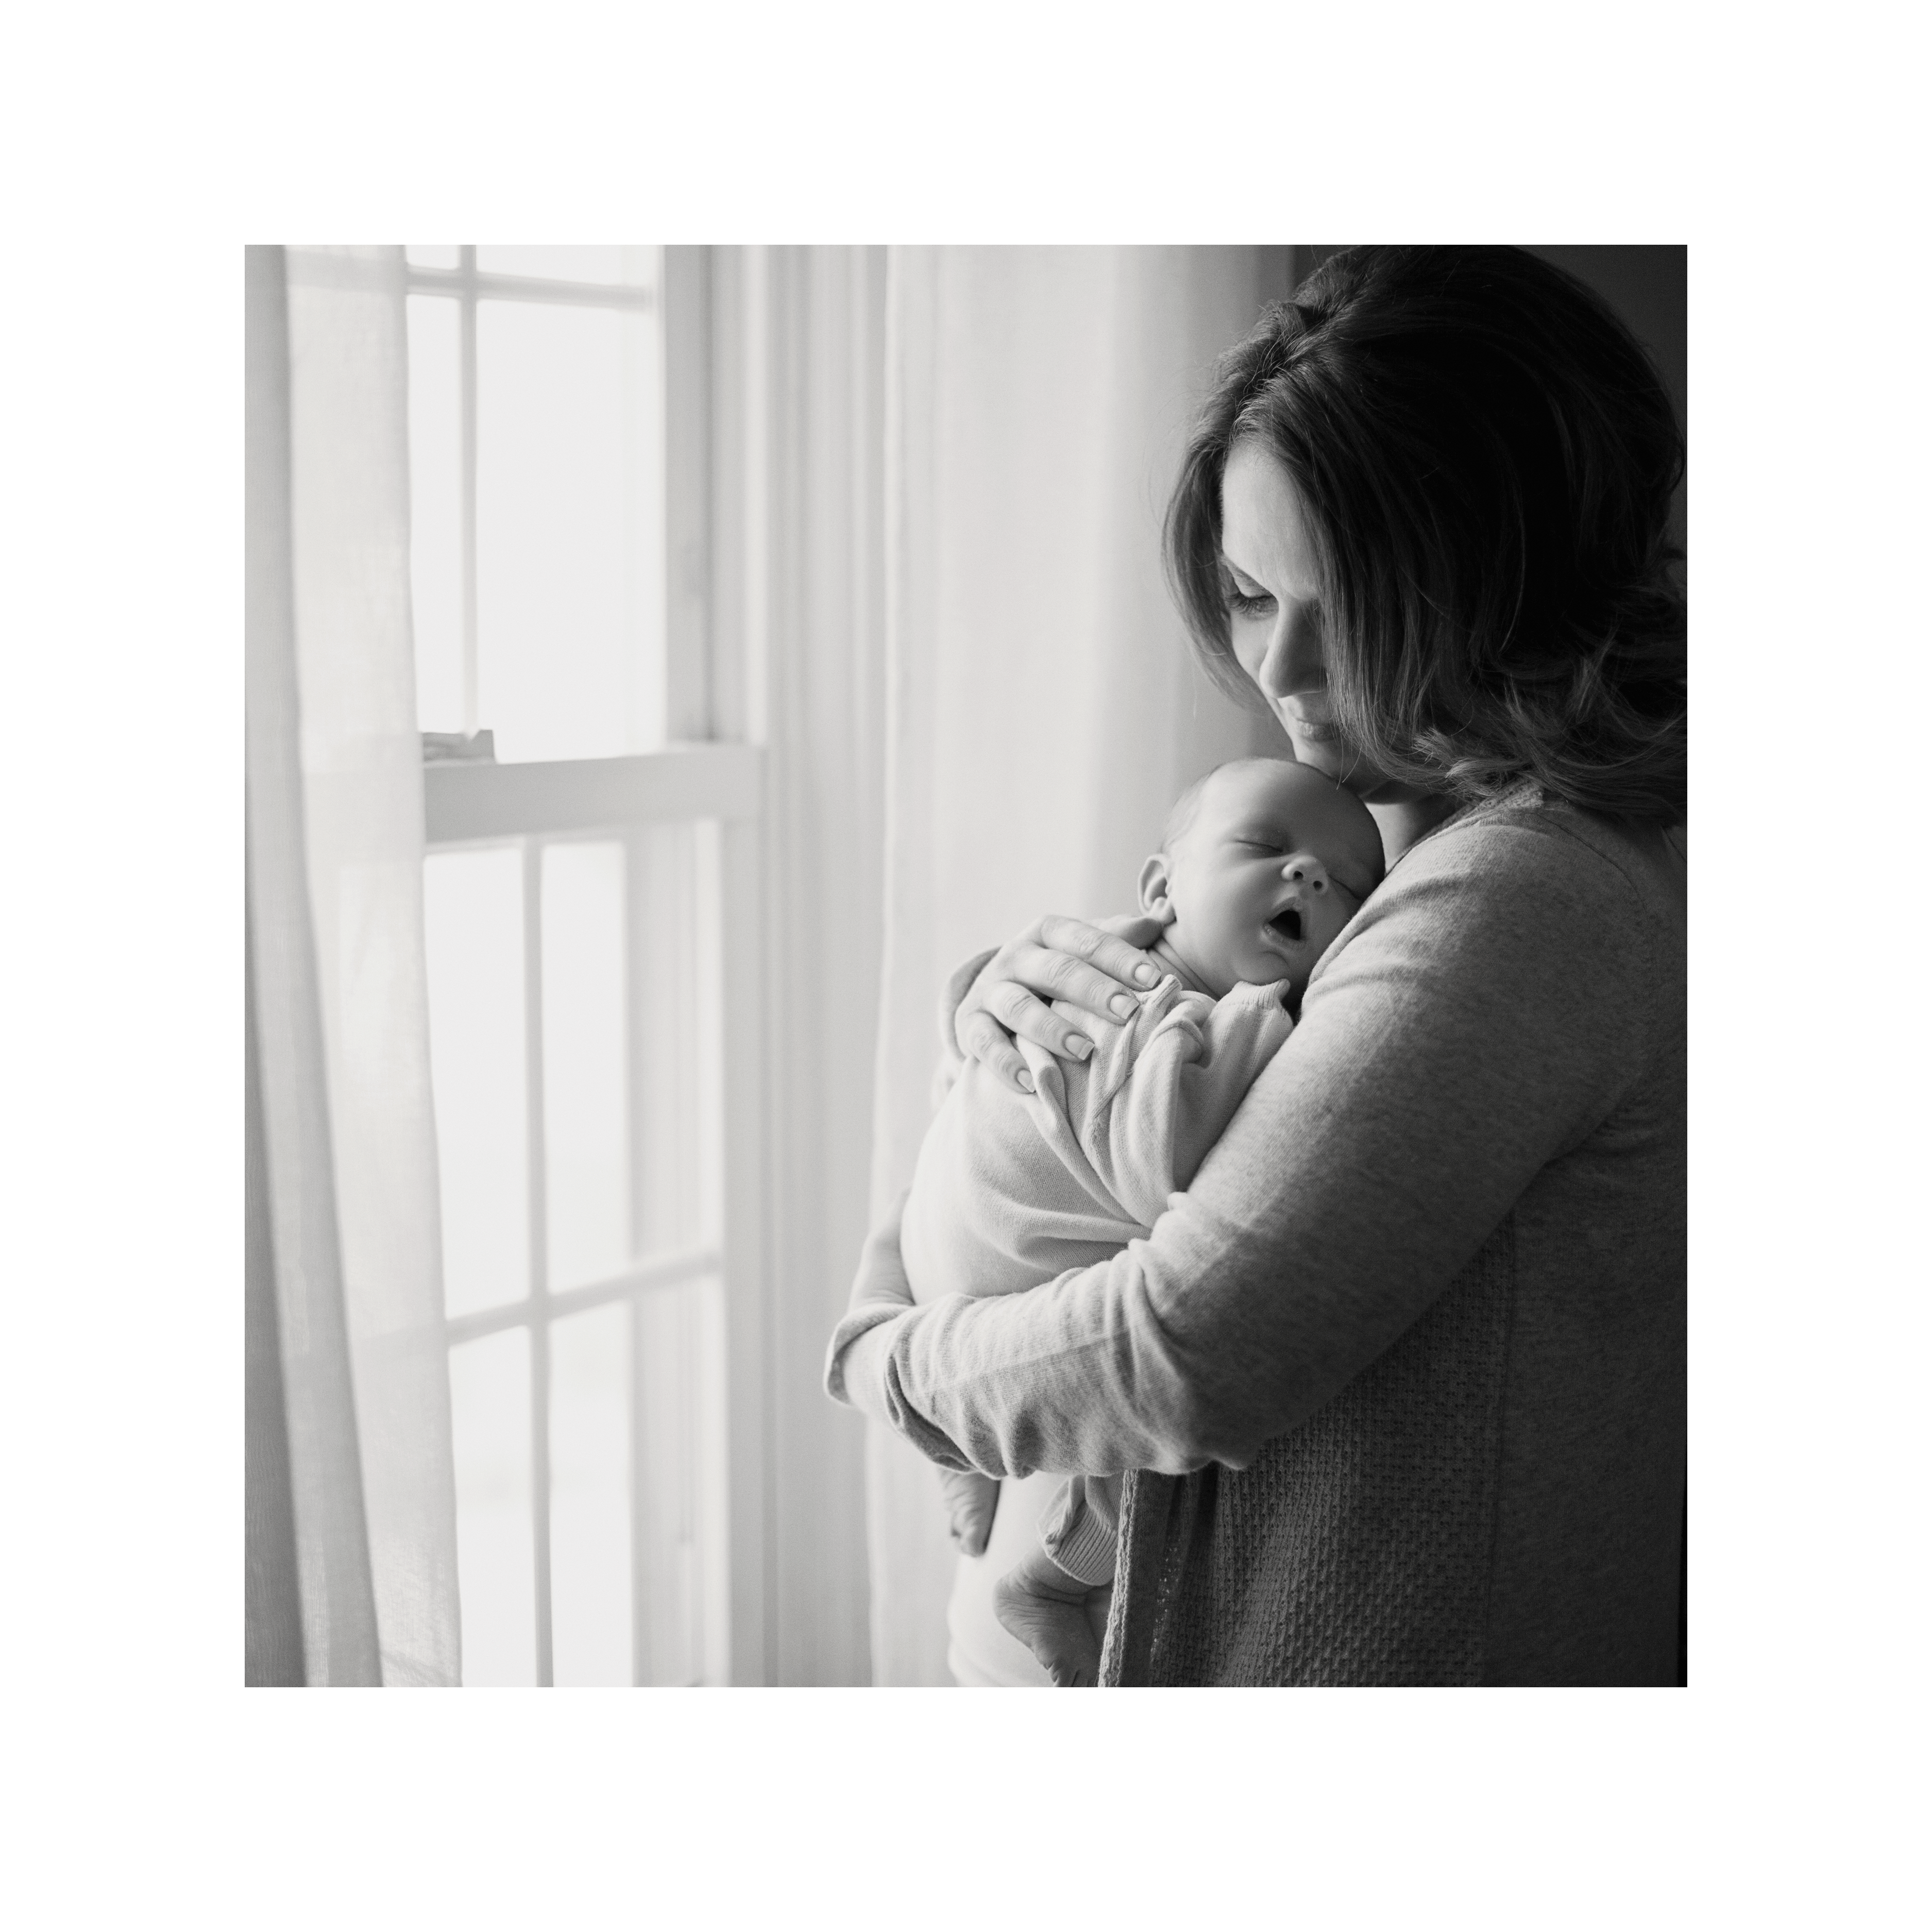 Portland Maine Maternity and Newborn Photography by Tiffany Farley, htp://tiffanyfarley.com